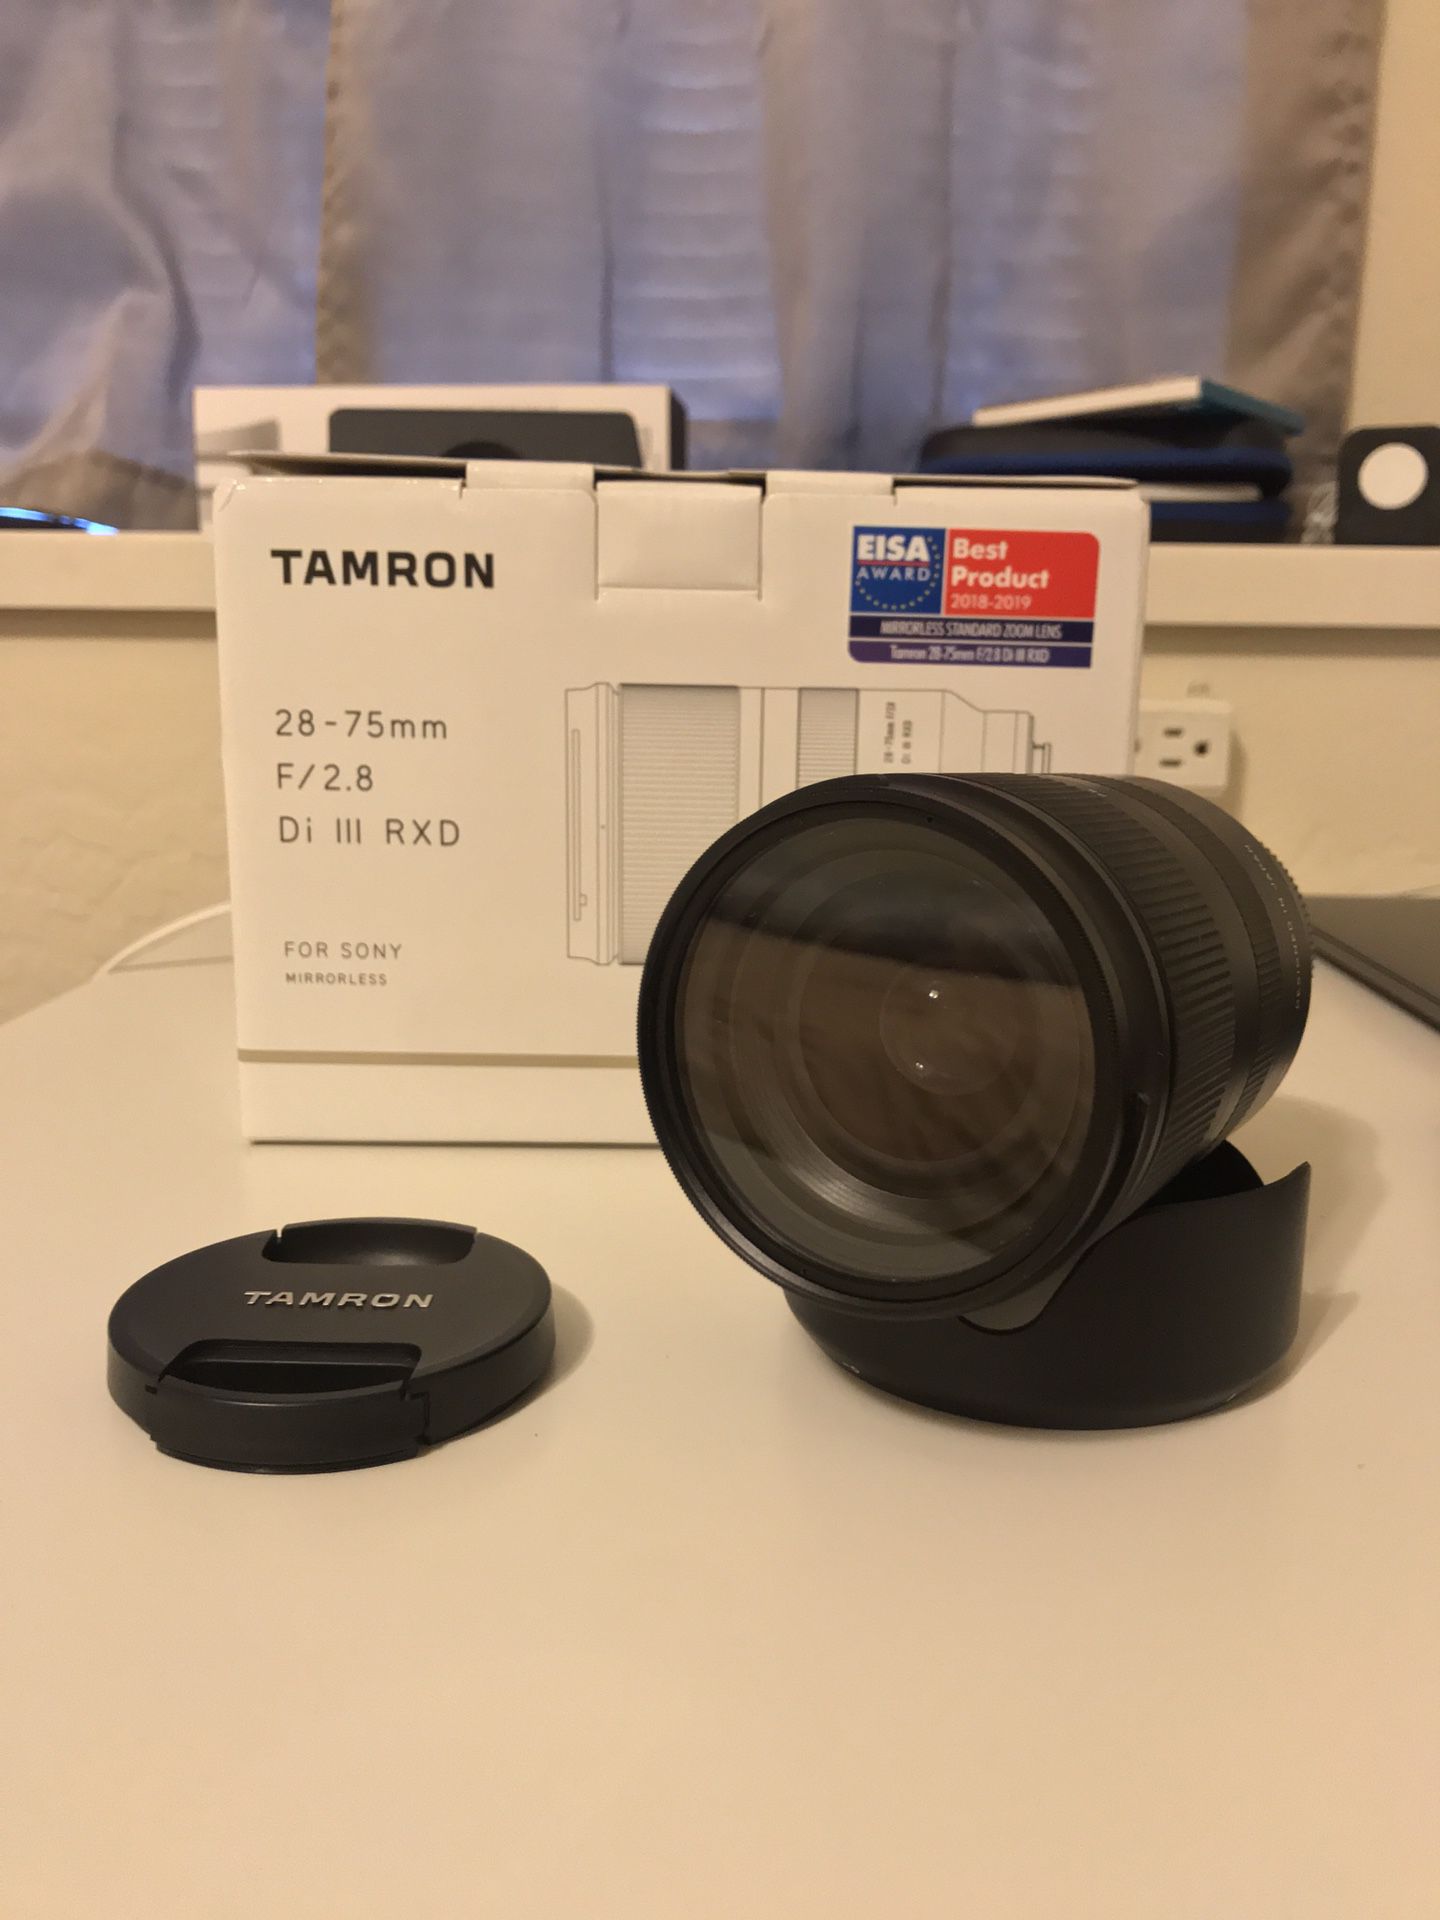 Tamron 28-75mm f2.8 e-mount lens